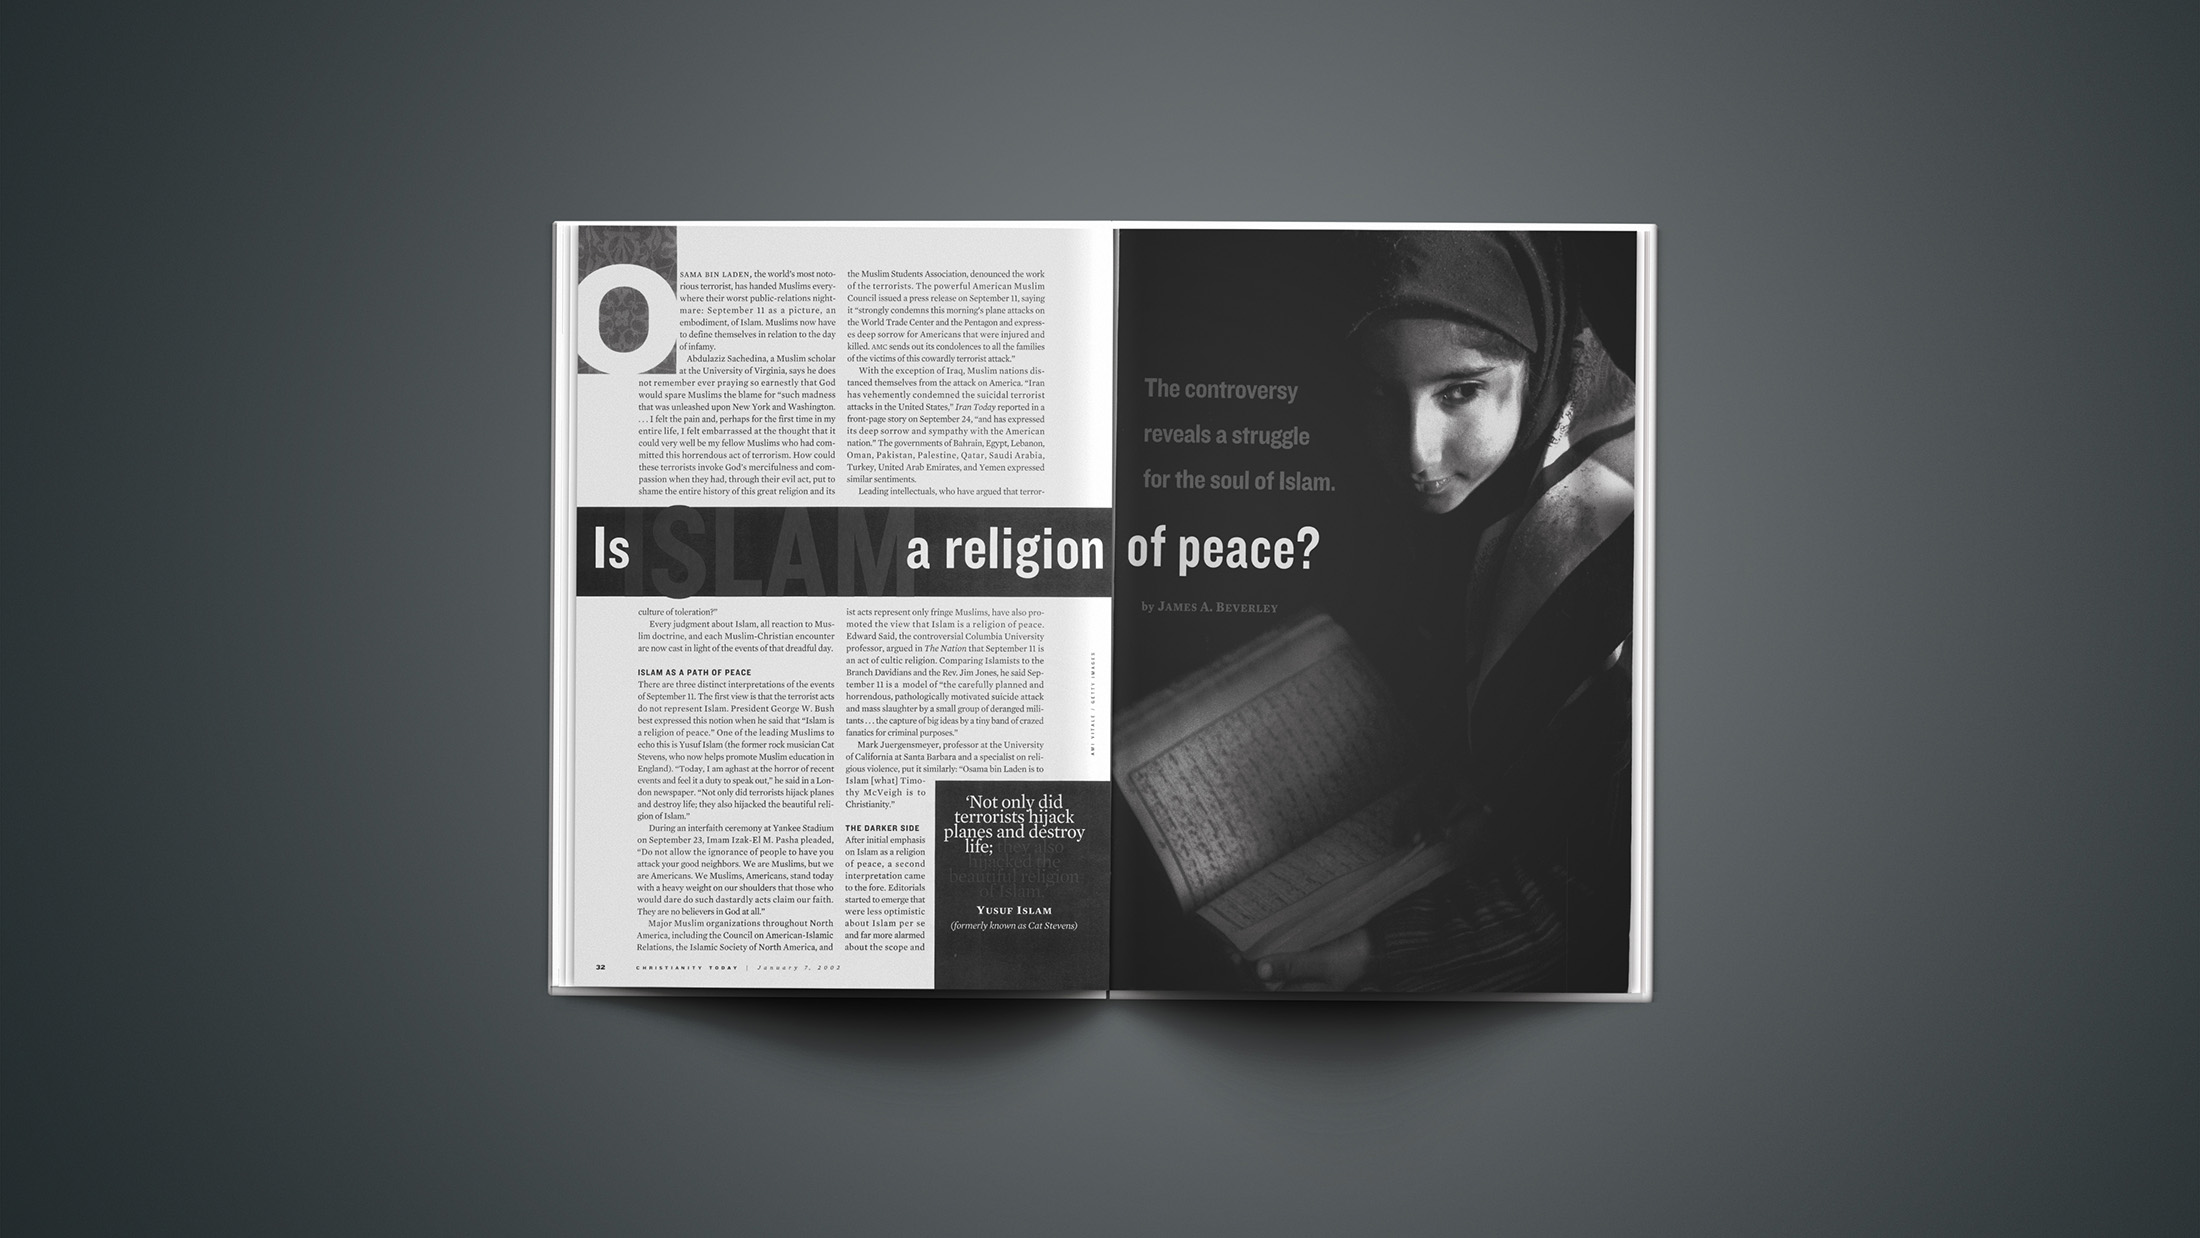 Manøvre chap Ambassadør Islam a religion of peace? | Christianity Today